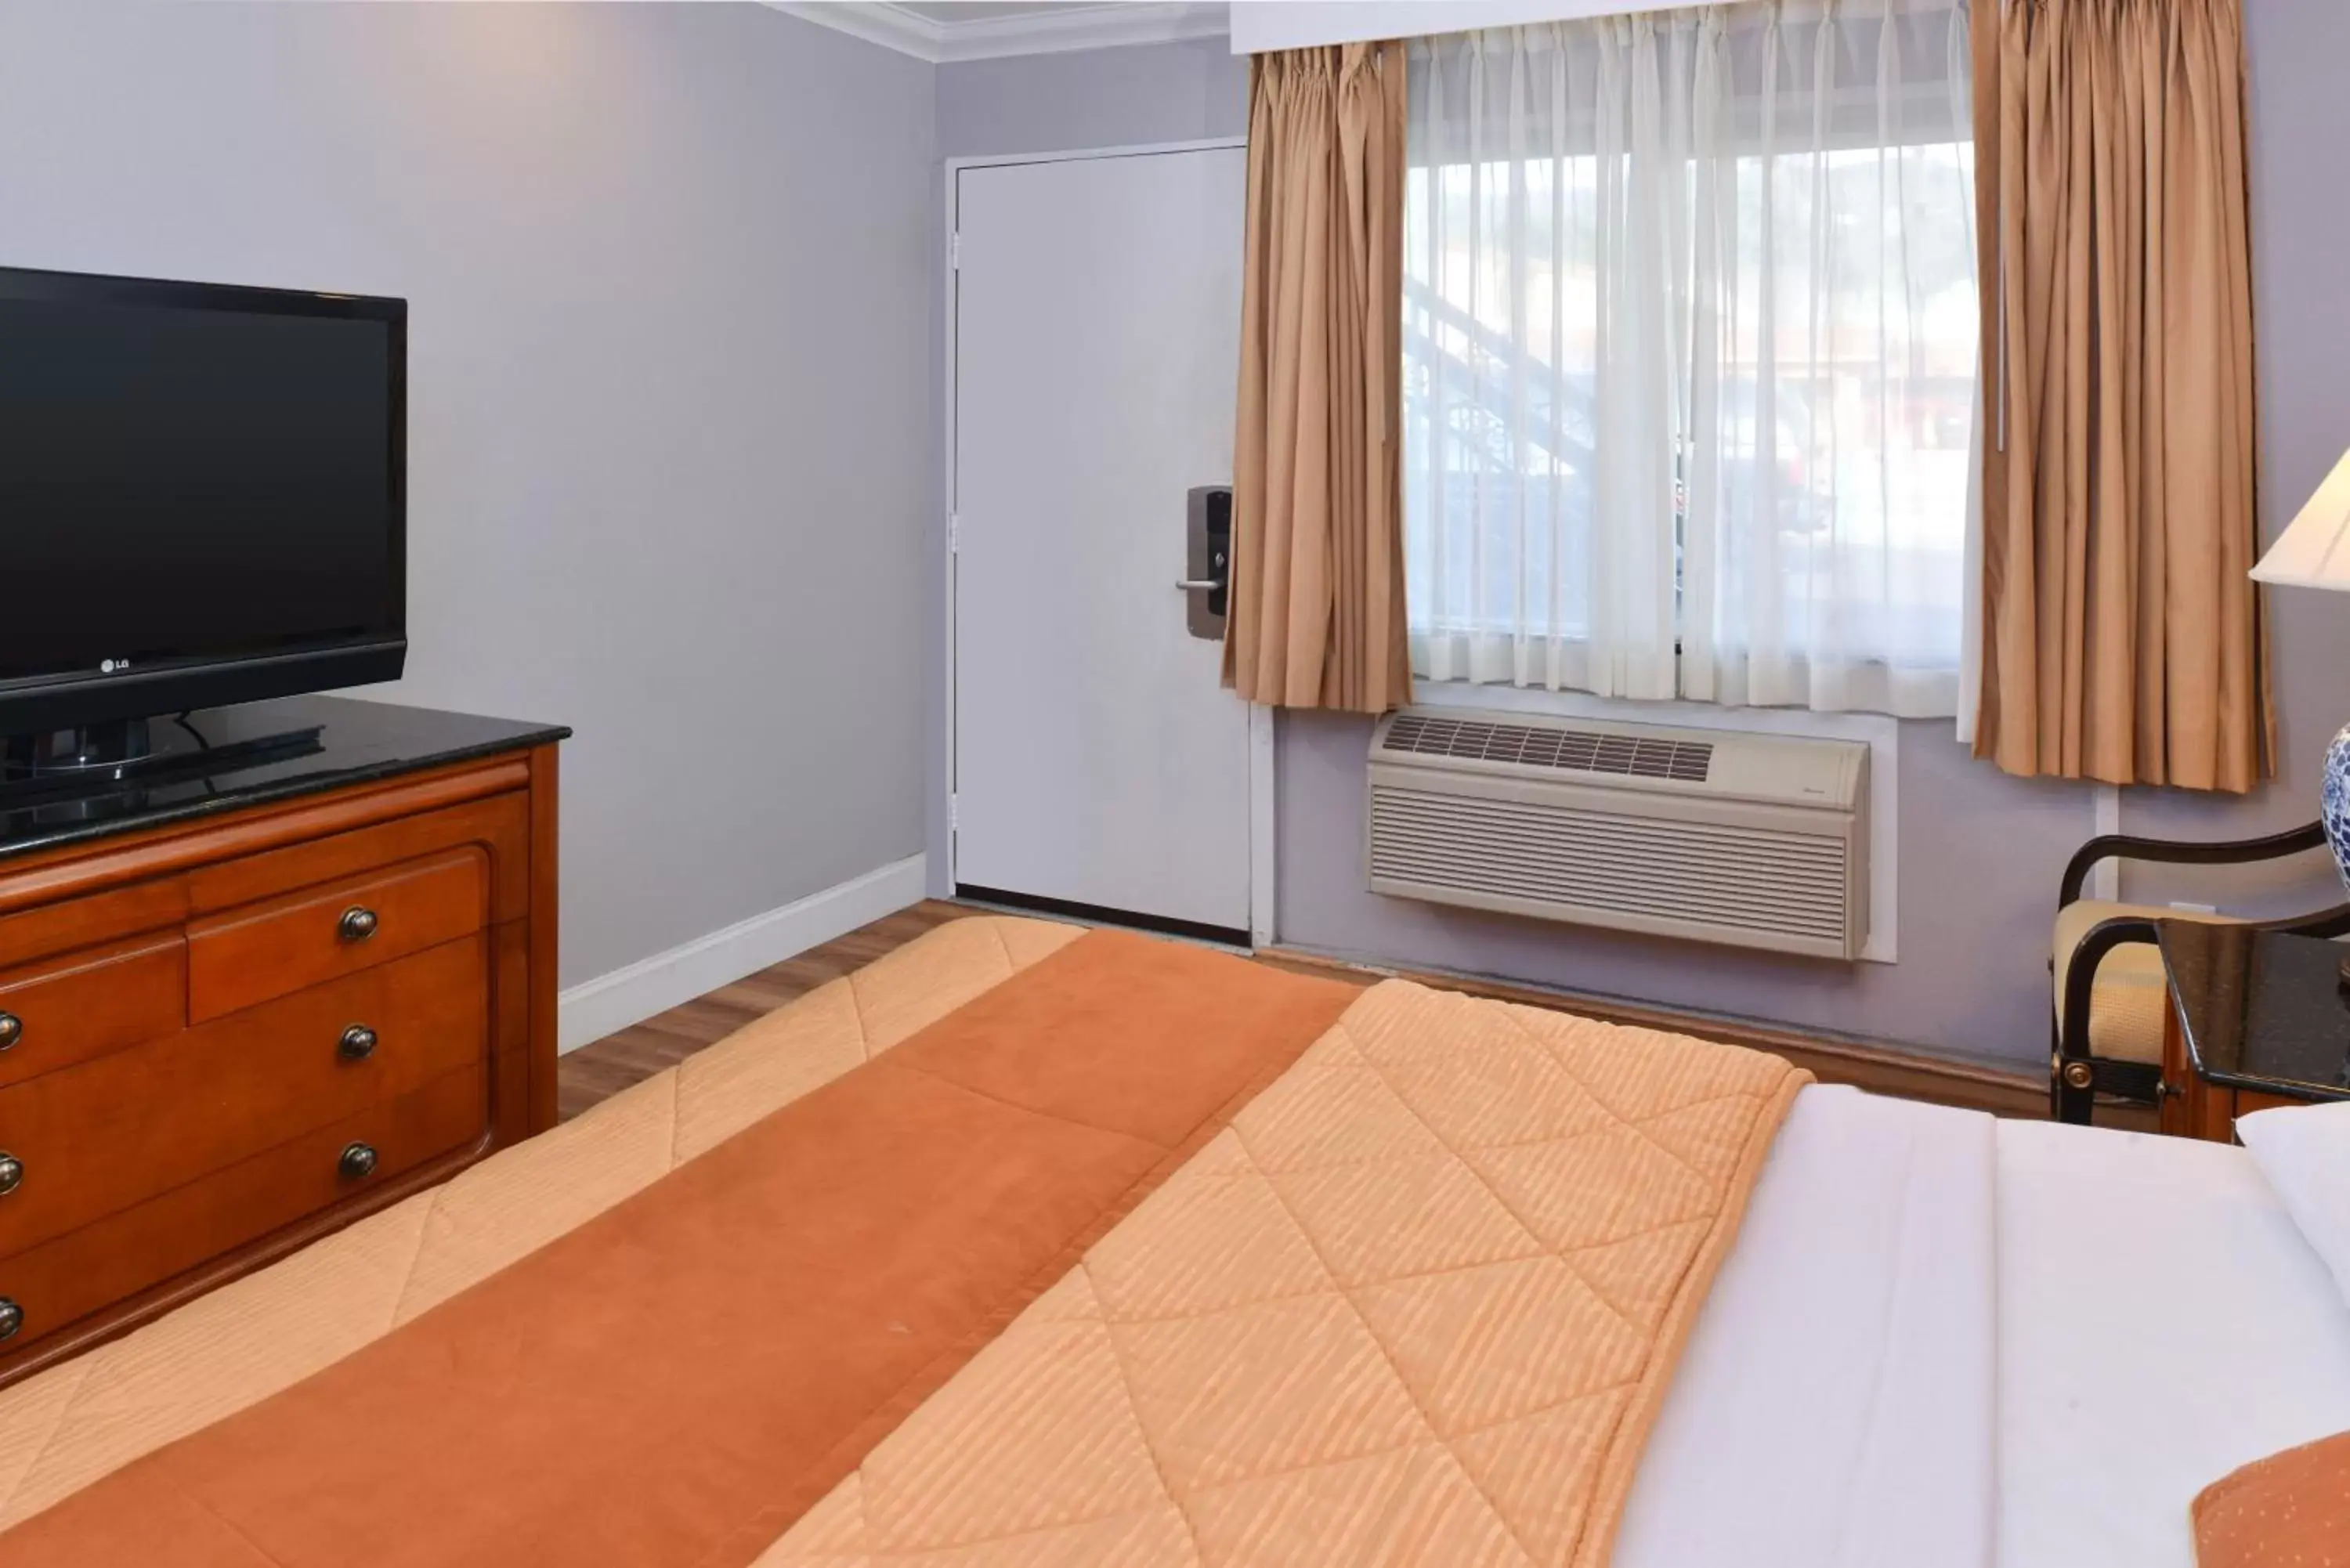 Bedroom, TV/Entertainment Center in Highlander Motel